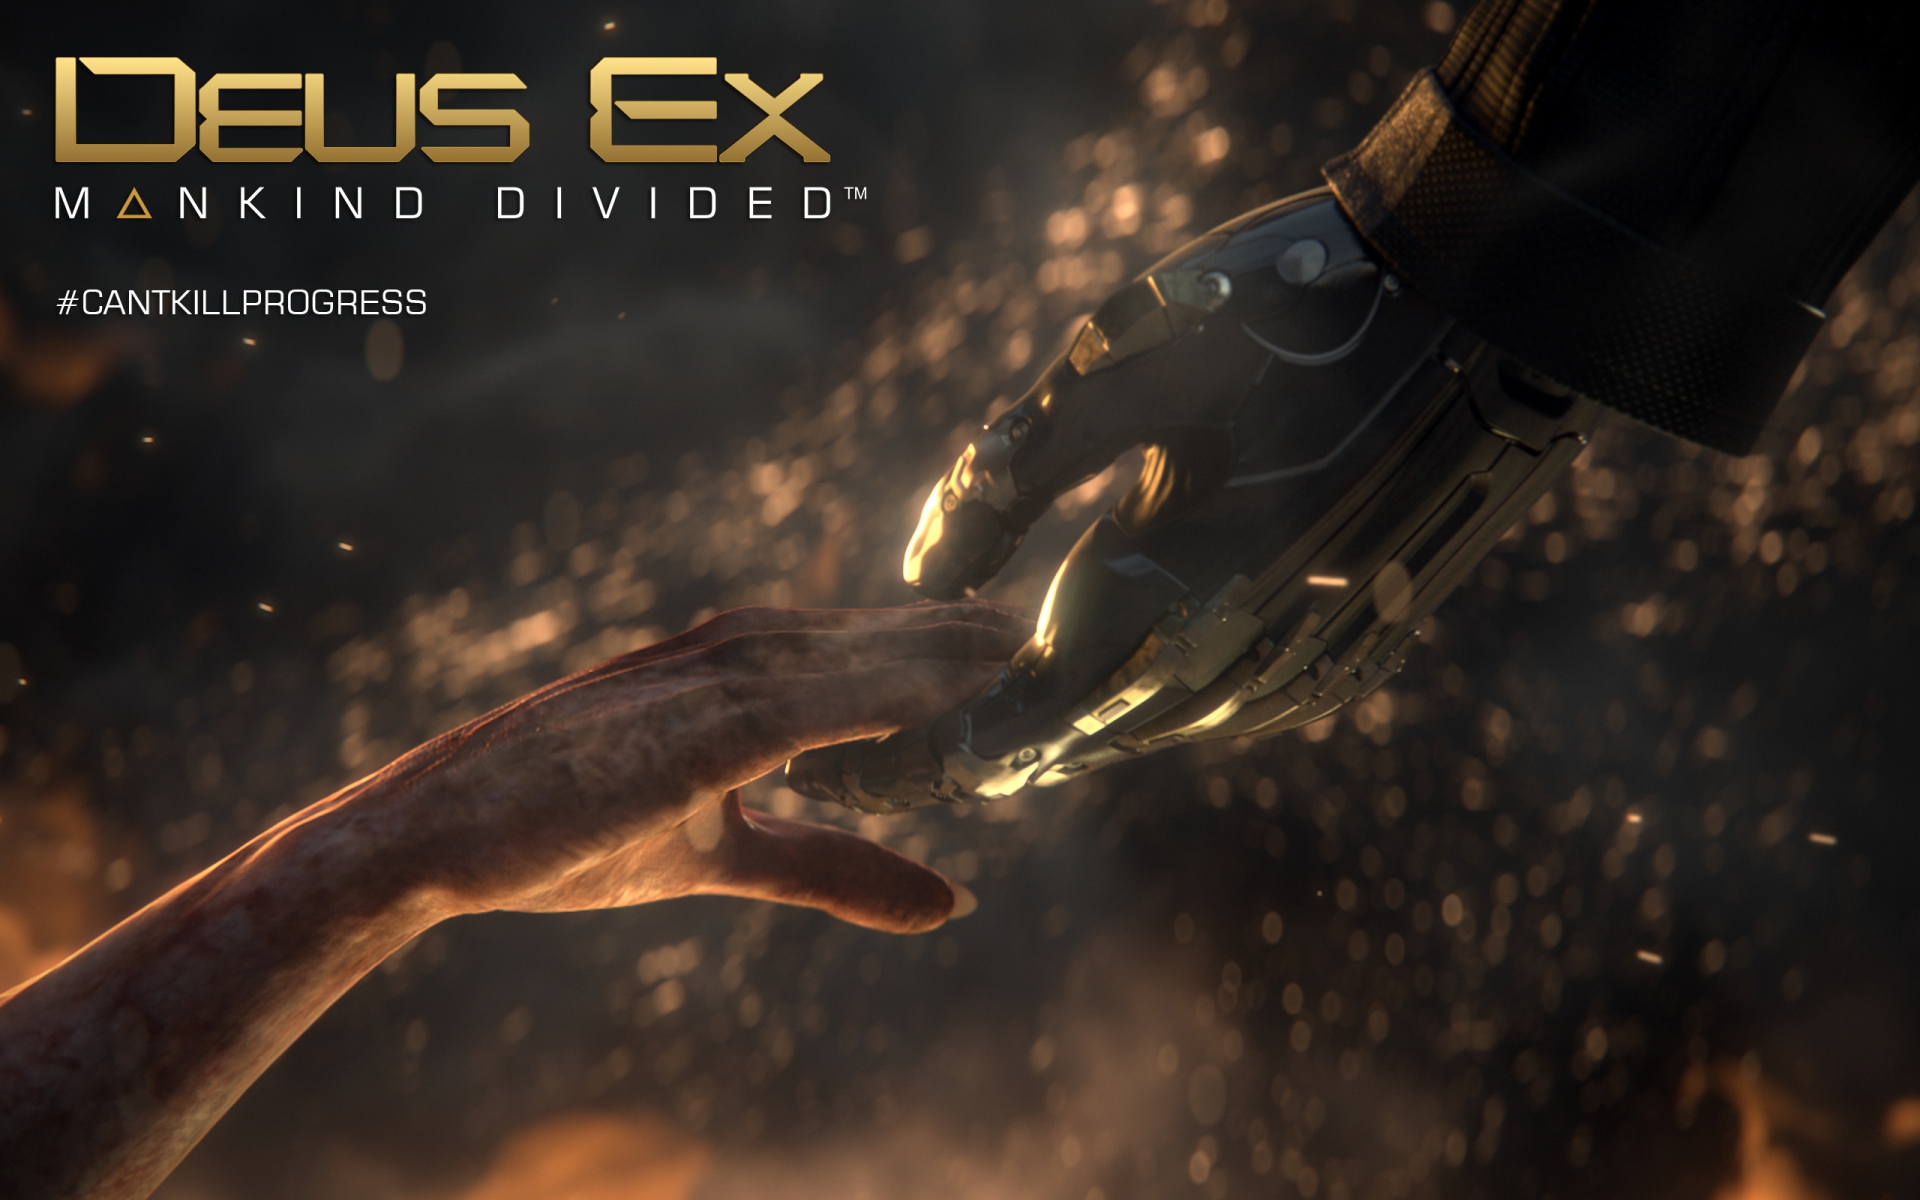    Deus Ex: Mankind Divided